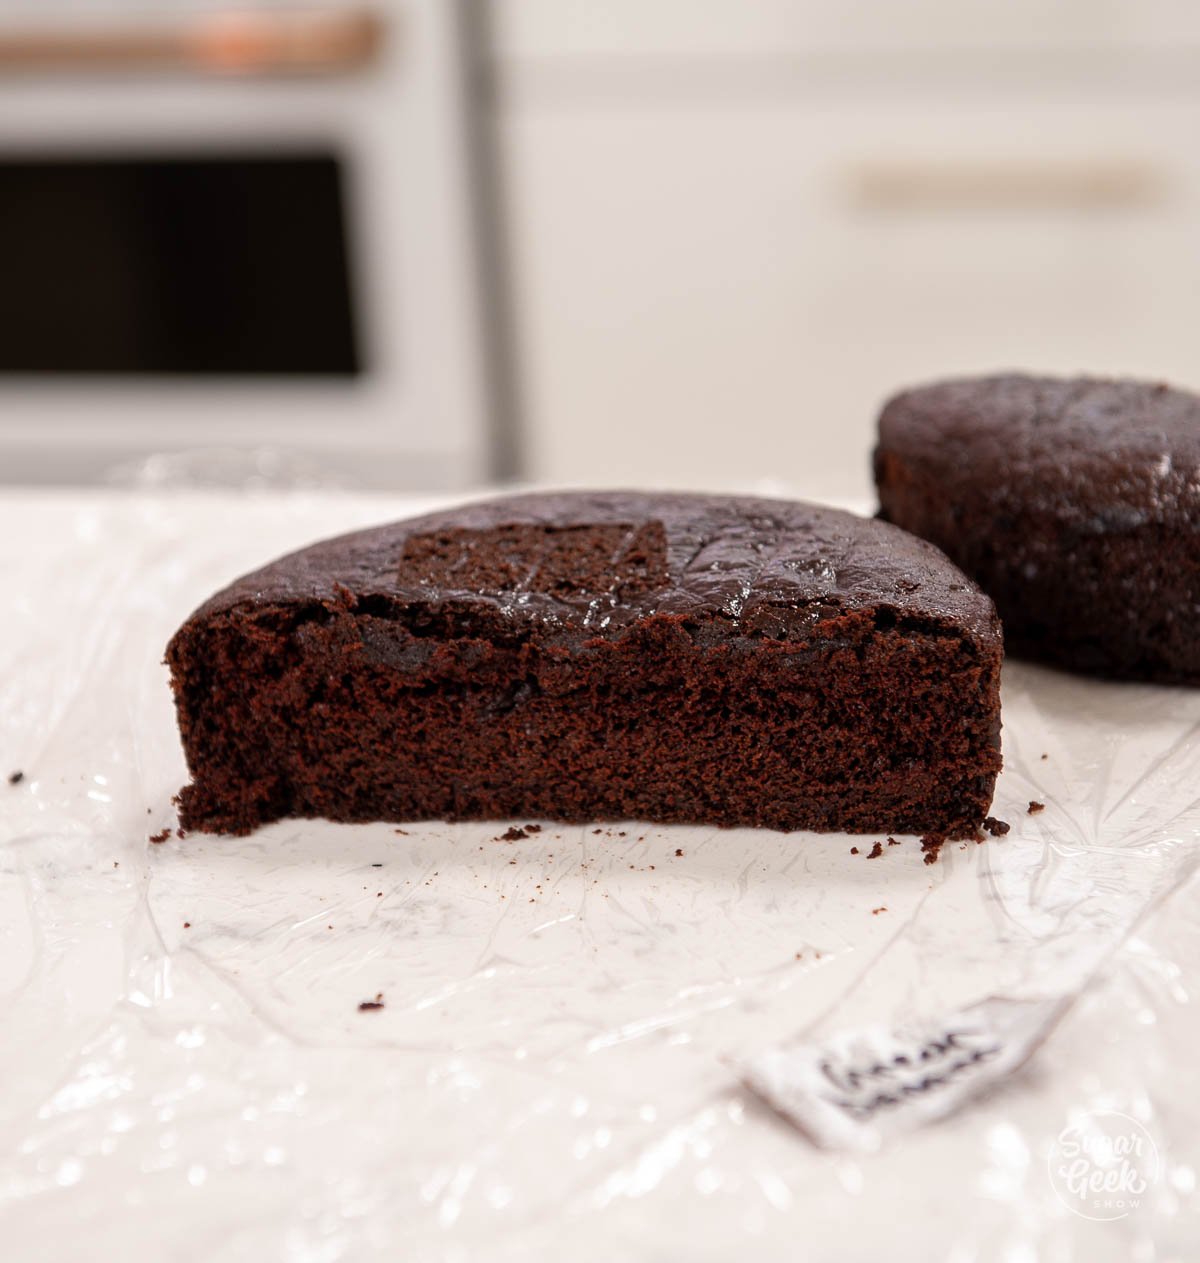 chocolate cake cut in half